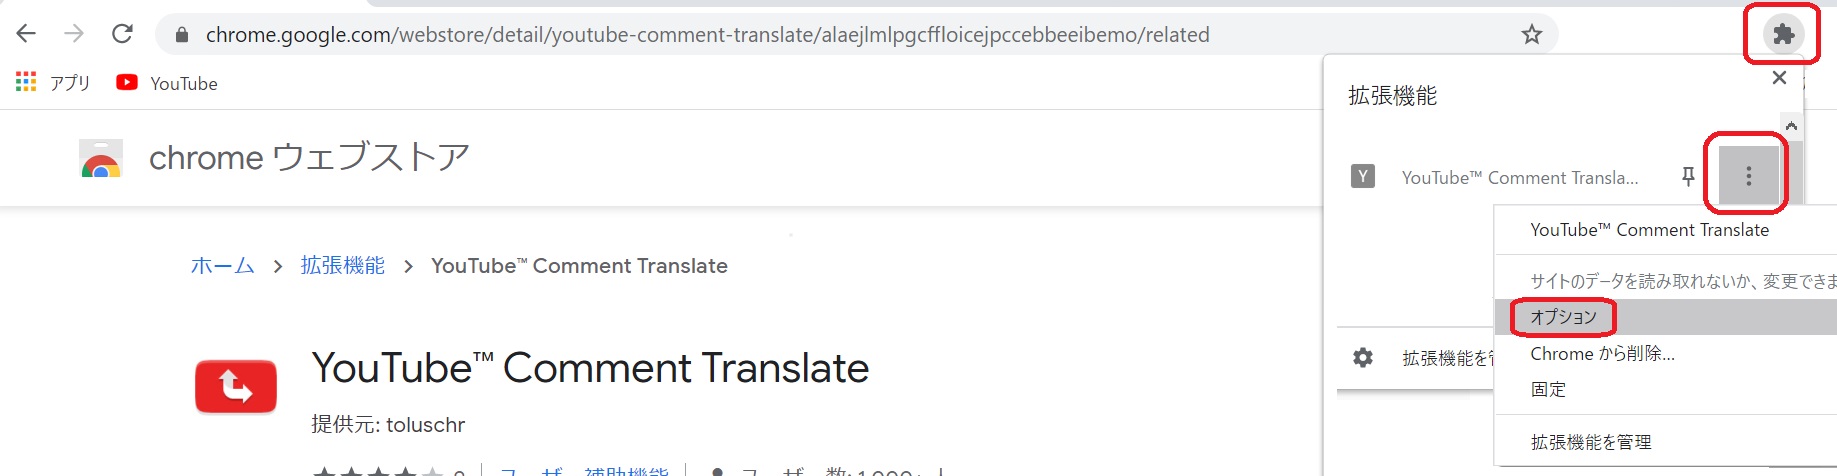 Pc Youtubeのコメントを翻訳する方法 Chrome拡張機能 のびたのセミリタイア